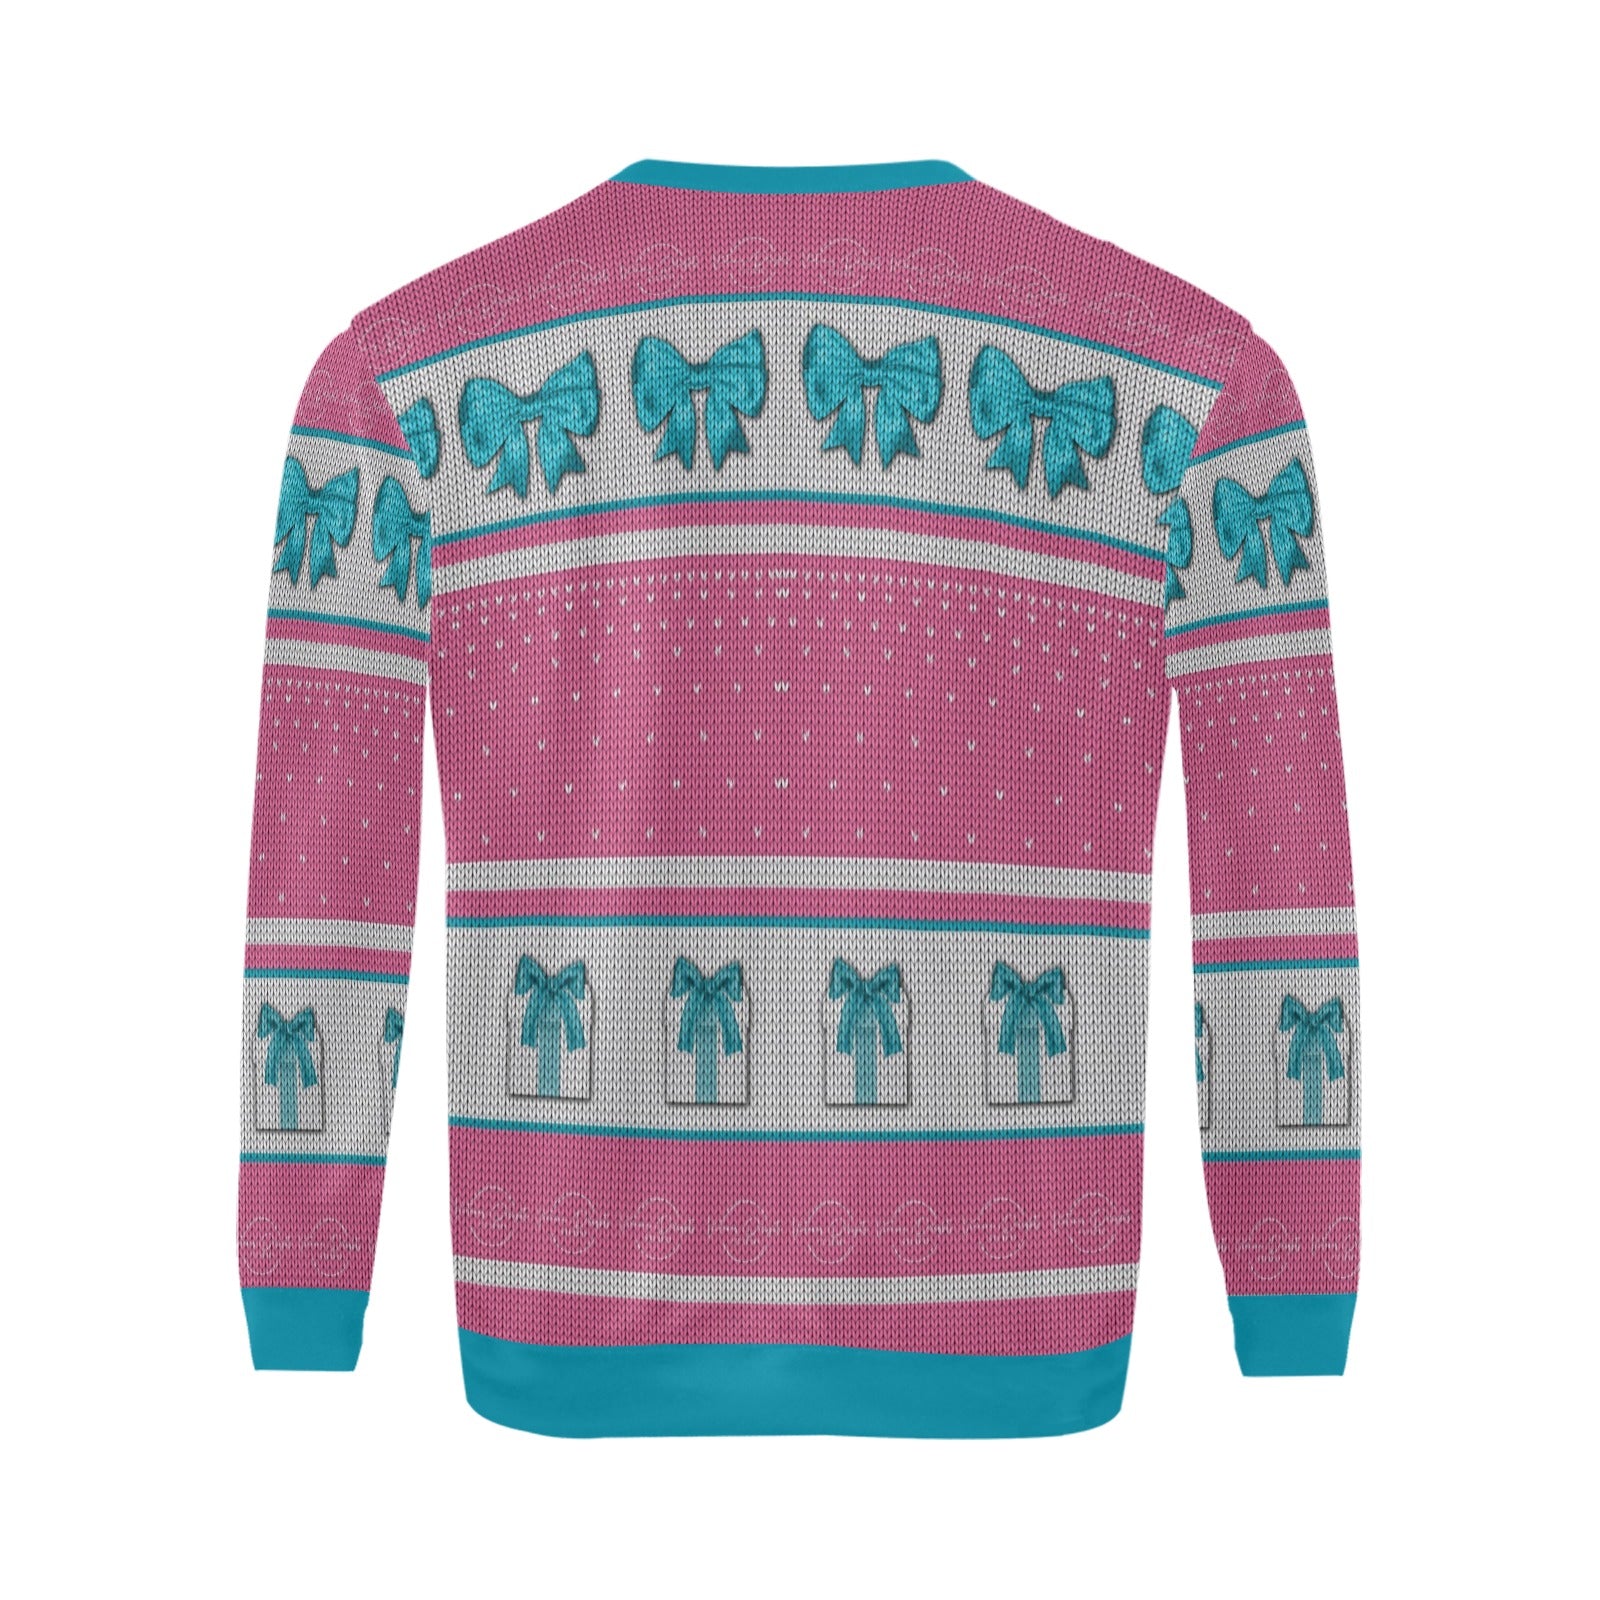 Ugly Christmas Sweater All Over Print Crewneck Sweatshirt Shop Small